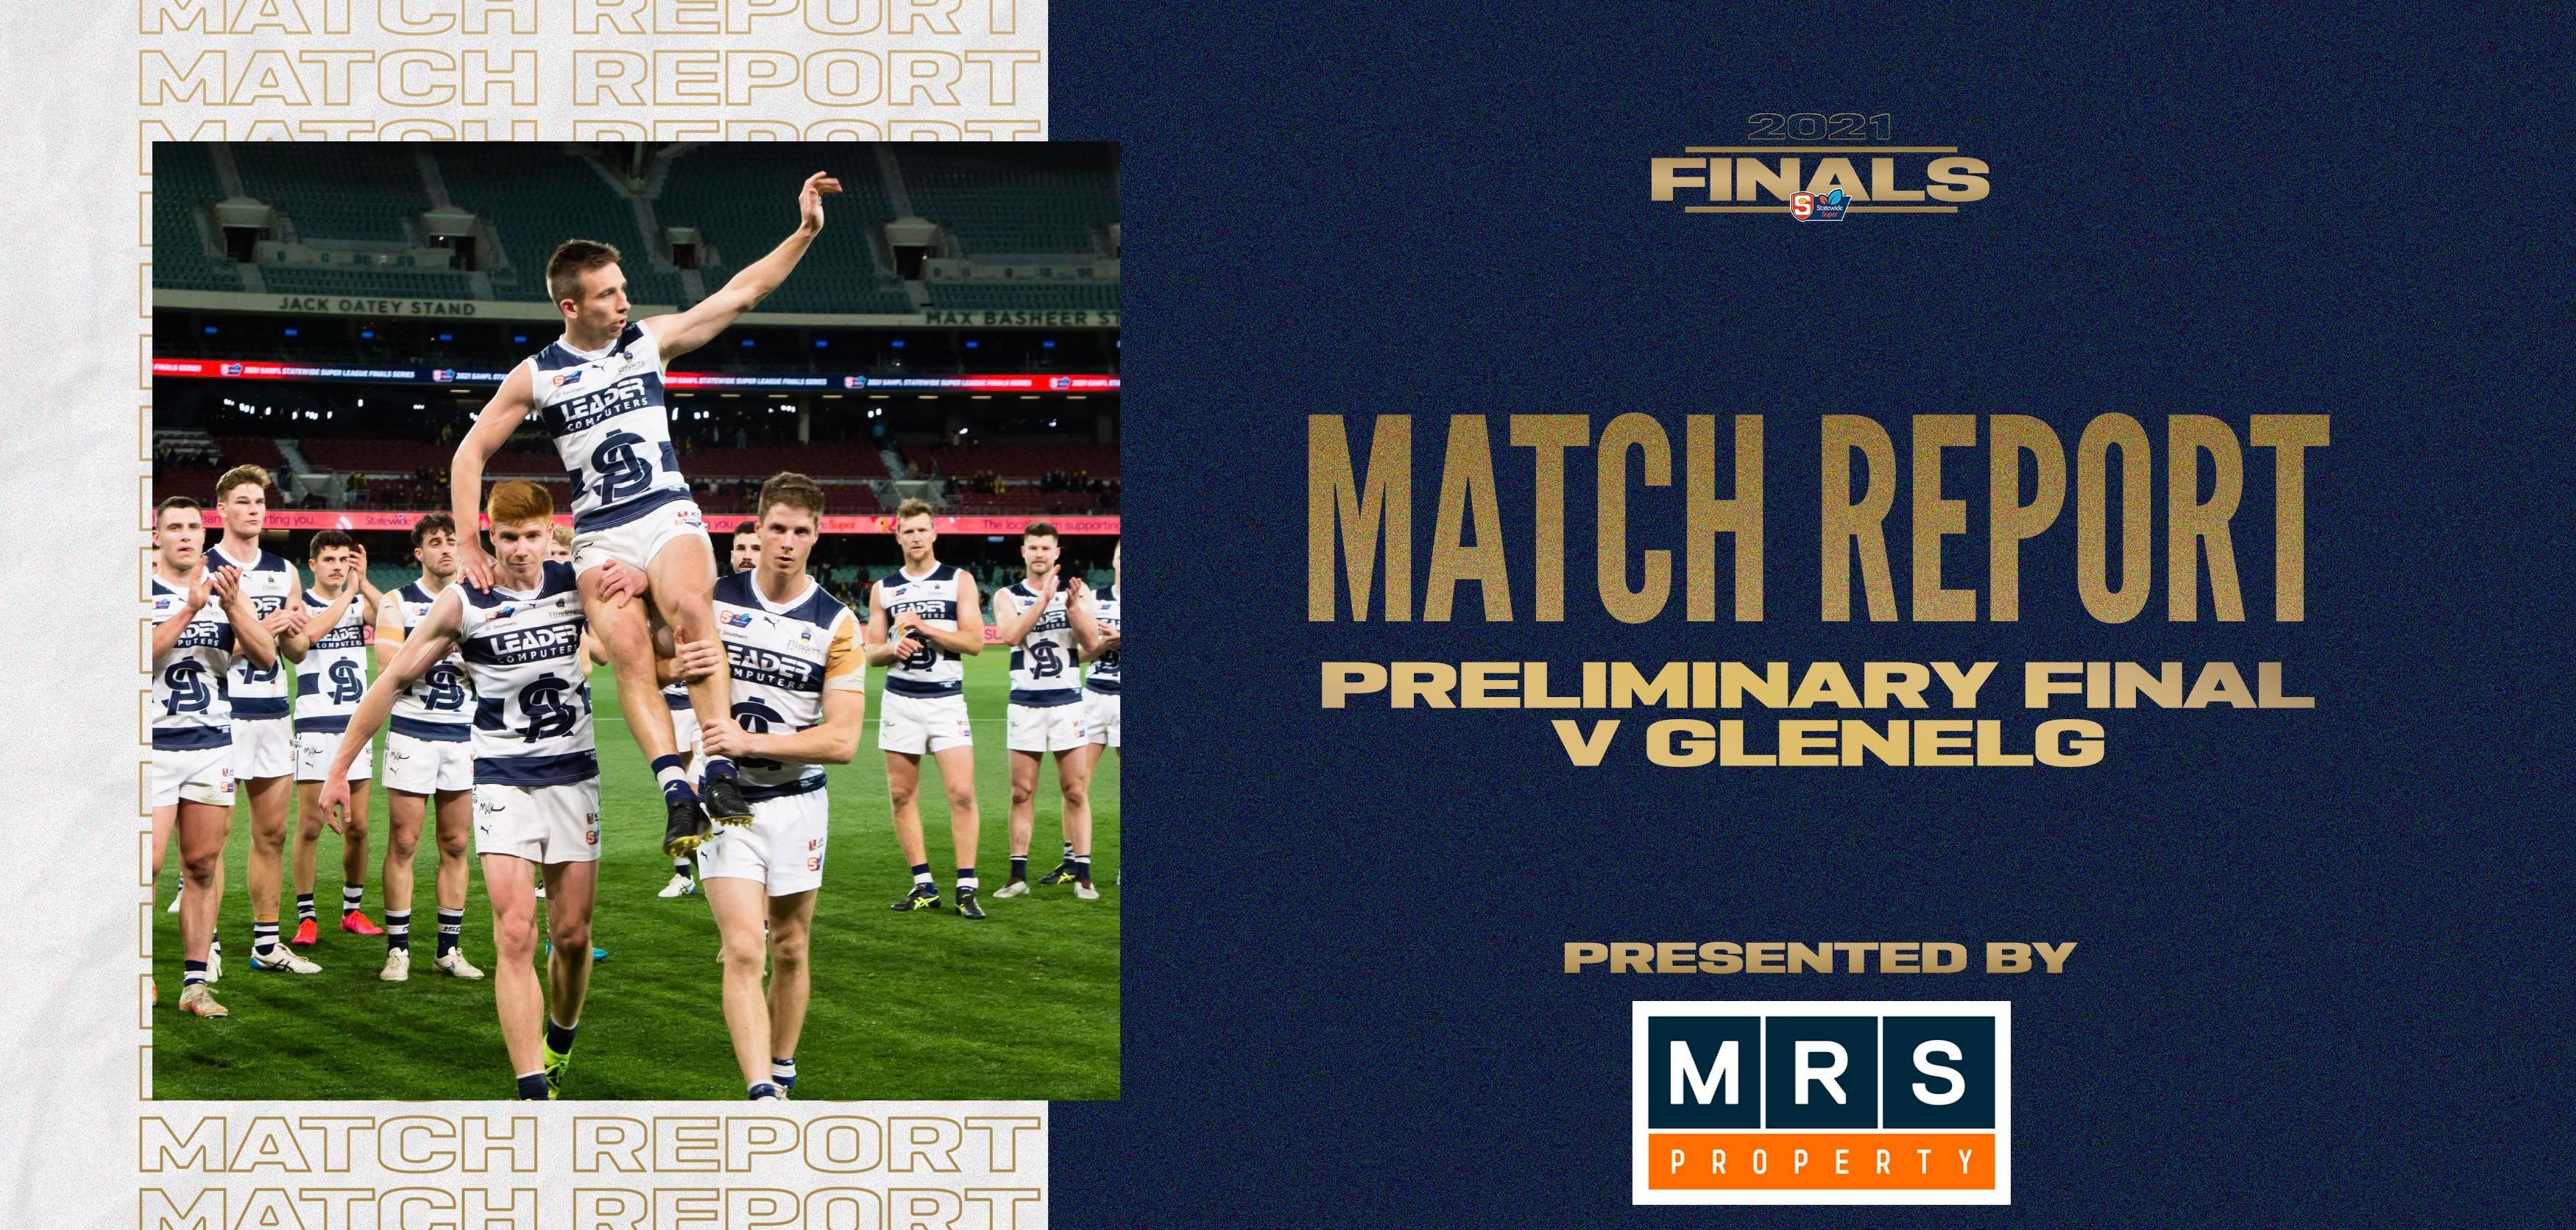 MRS Property Match Report Preliminary Final: vs Glenelg